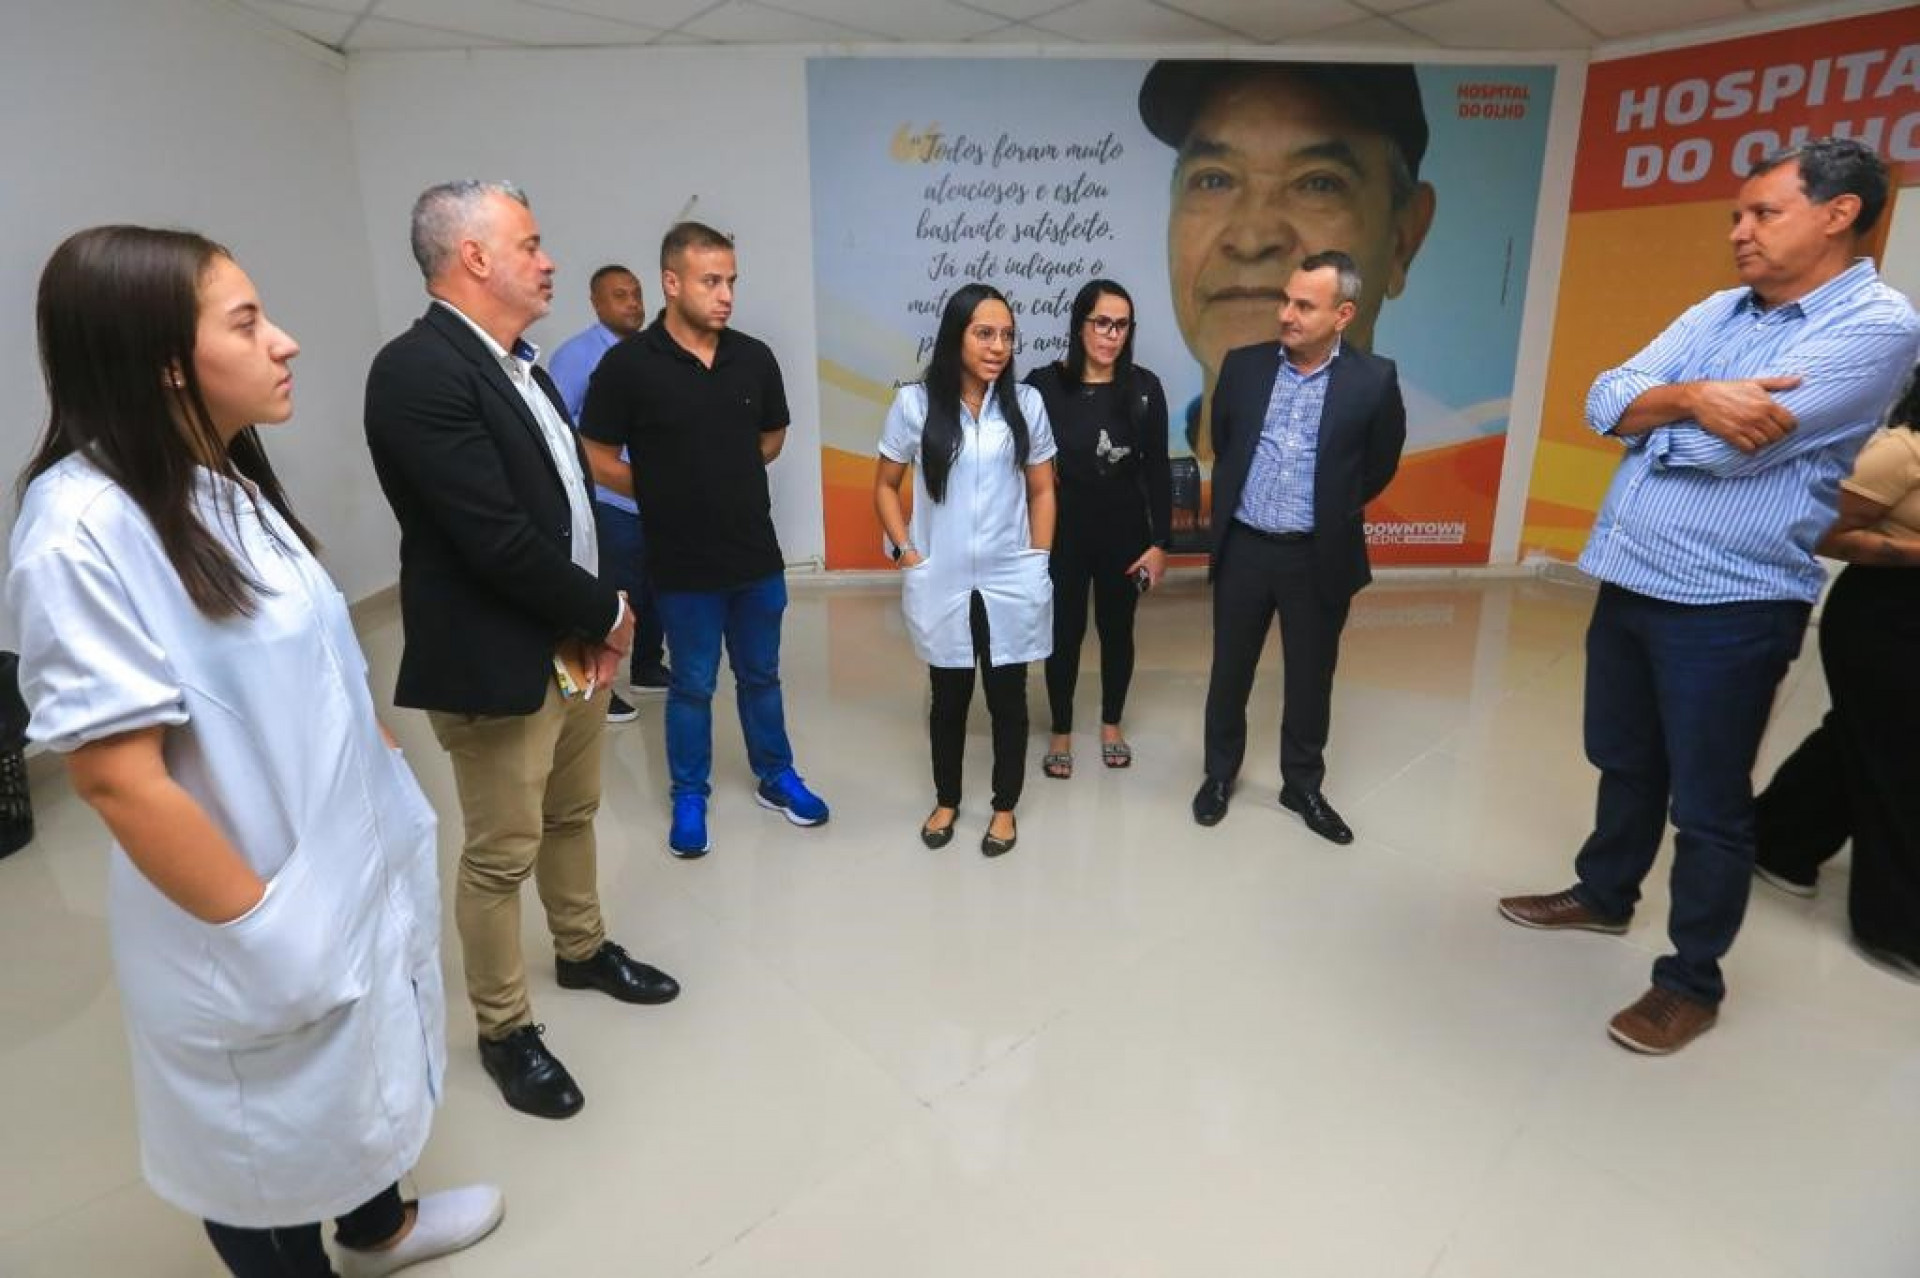 O prefeito Waguinho e representantes do Ministério da Saúde visitaram o Hospital do Olho - Rafael Barreto / PMBR